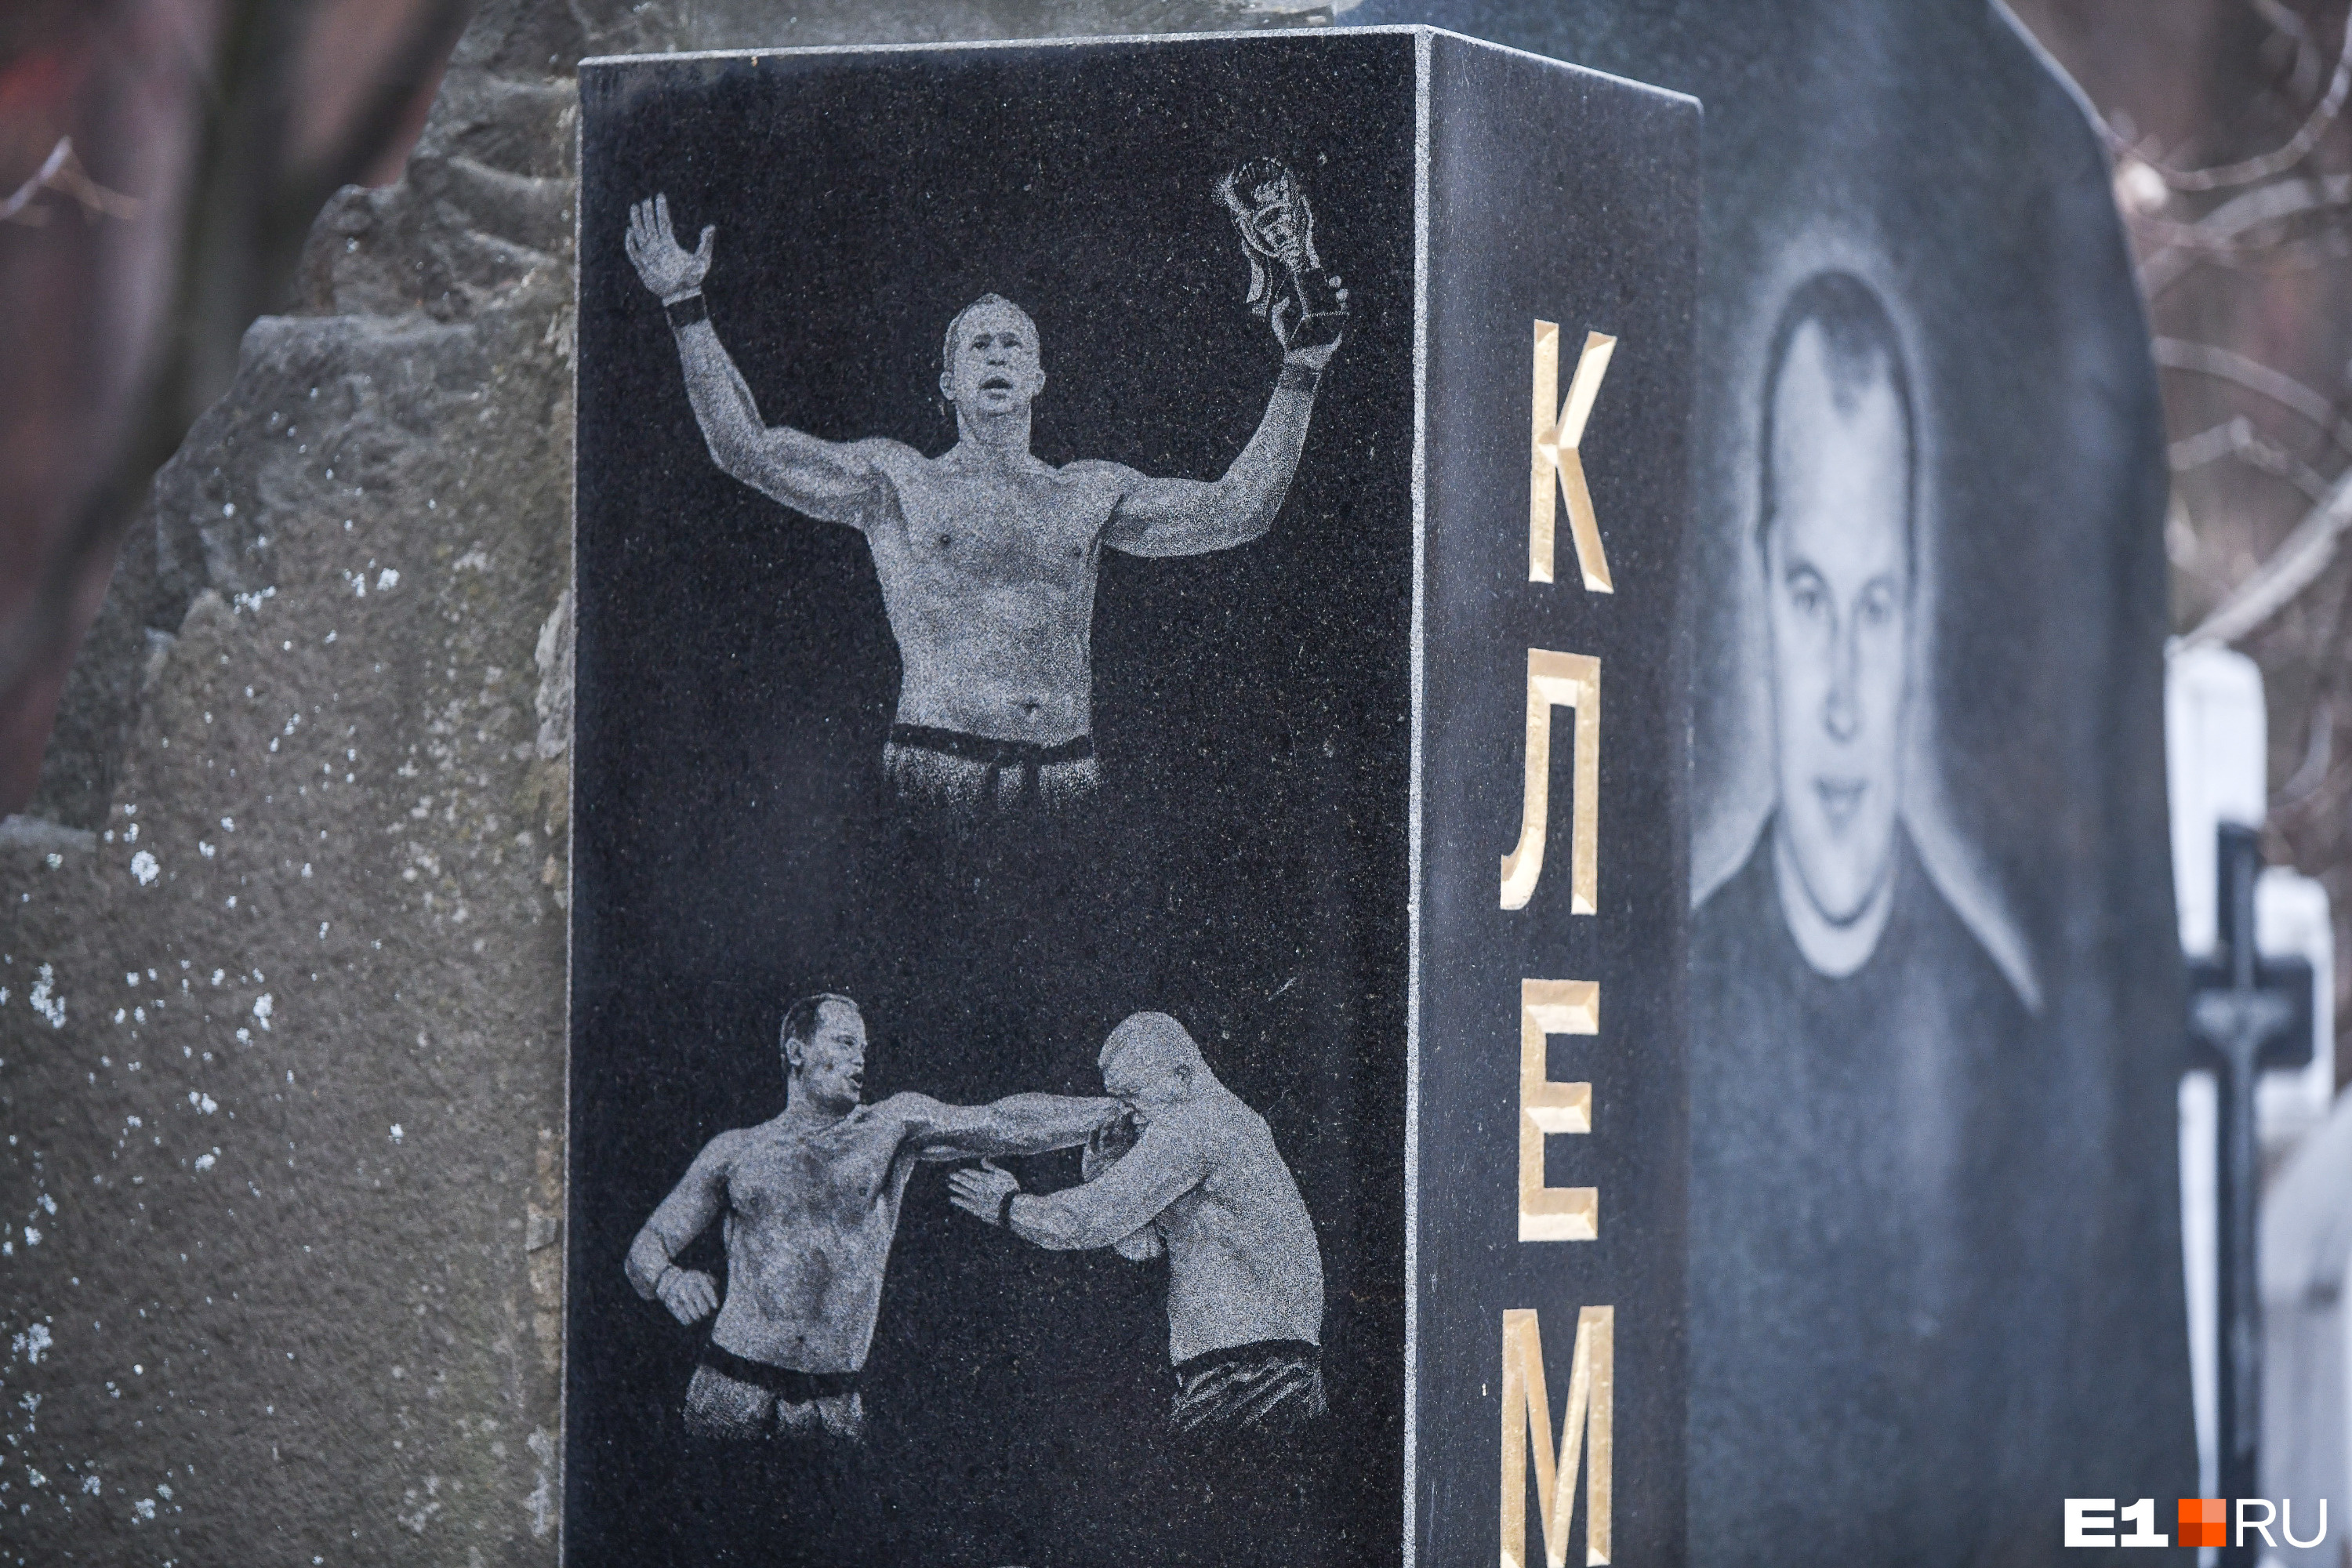 Владимир Клементьев был мастером спорта по карате, призером и участником европейских турниров. Его расстреляли в 2000 году — одним из последних среди «центровых»